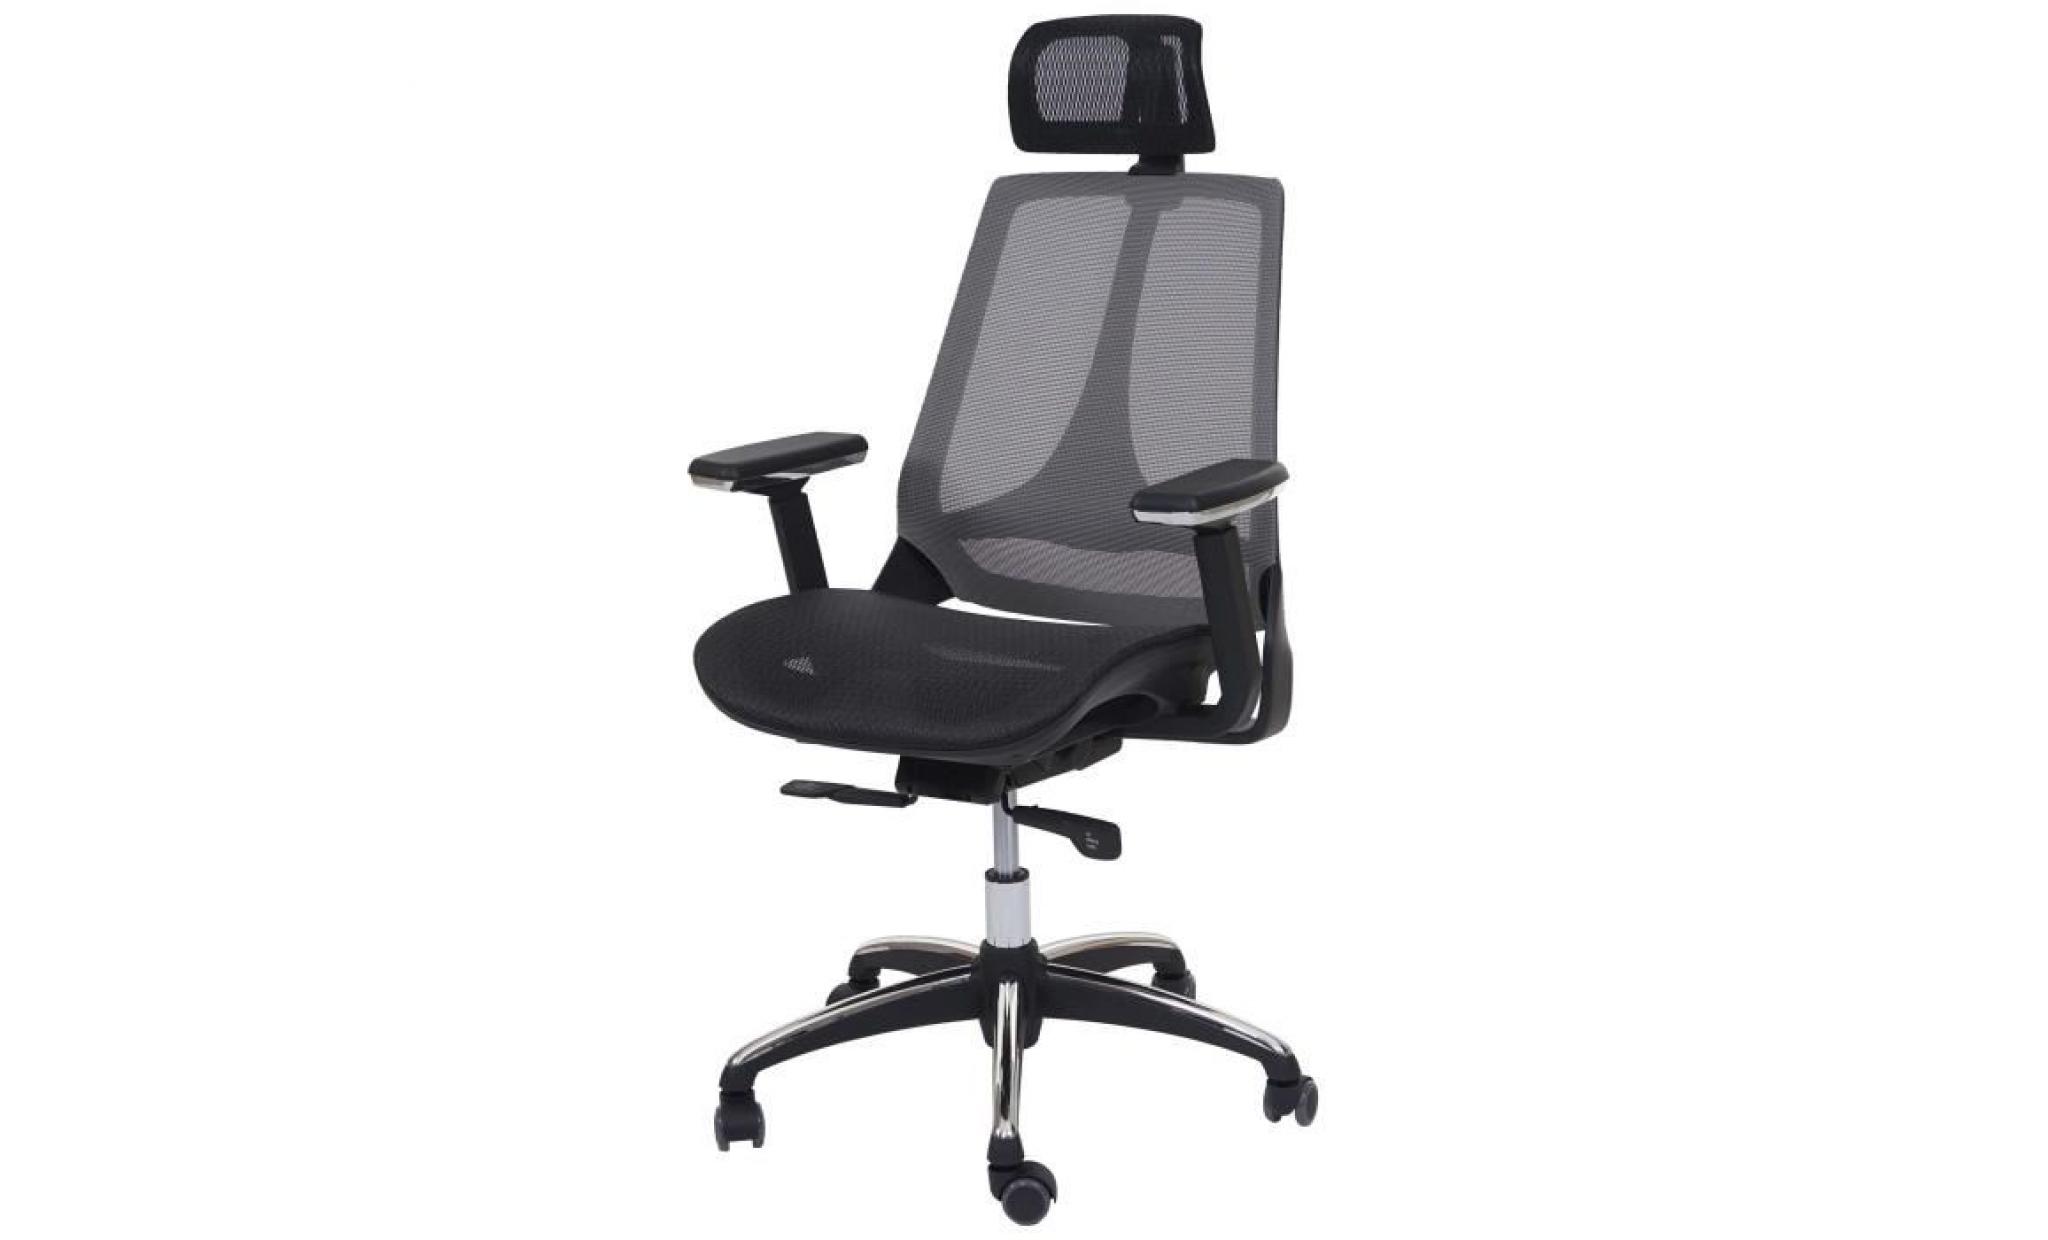 chaise de bureau hwc a59 chaise pivotante, fonction glisse, tissu iso9001 noir/gris